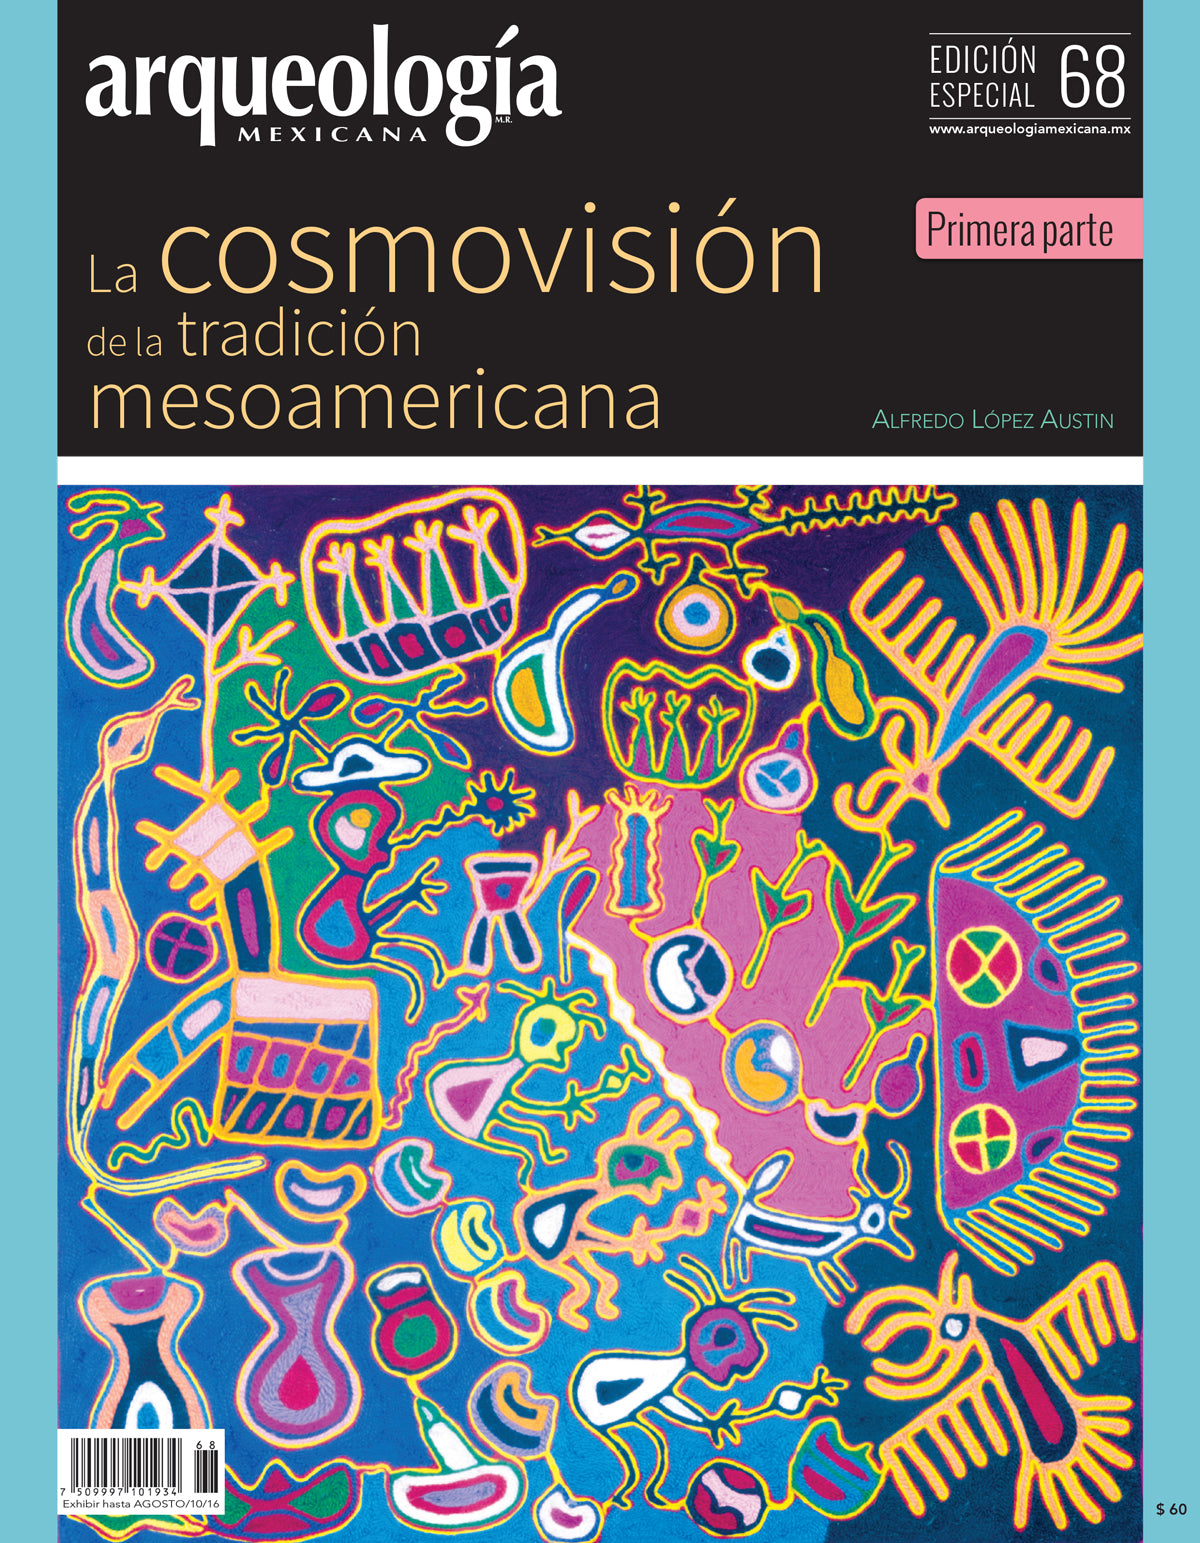 La cosmovisión de la tradición mesoamericana. Primera parte